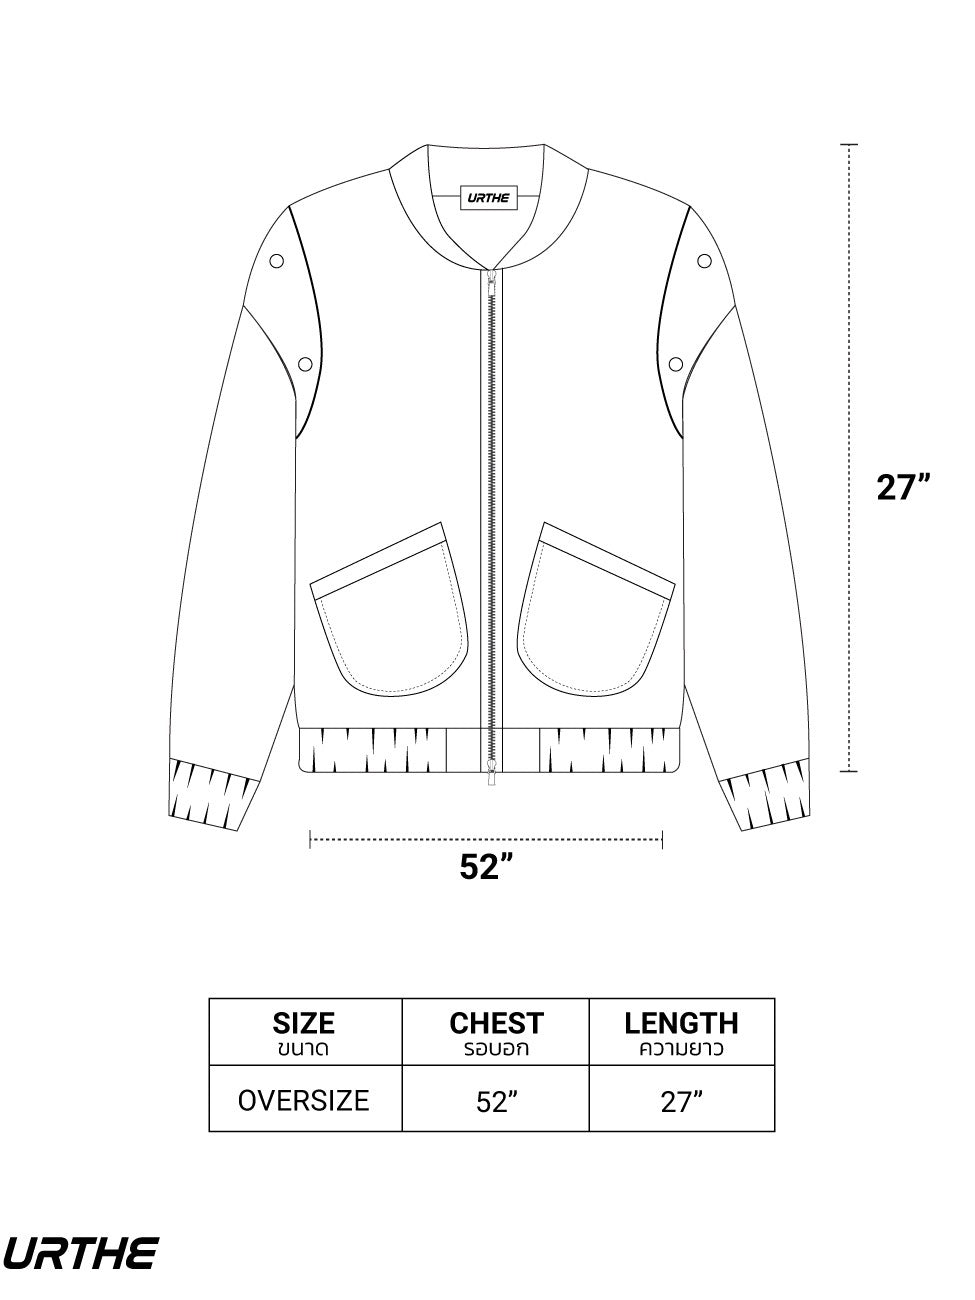 URTHE - เสื้อแจ็คเก็ตยีนส์ แขนยาว ผ้าฟอก รุ่น DENIM JK 2.0